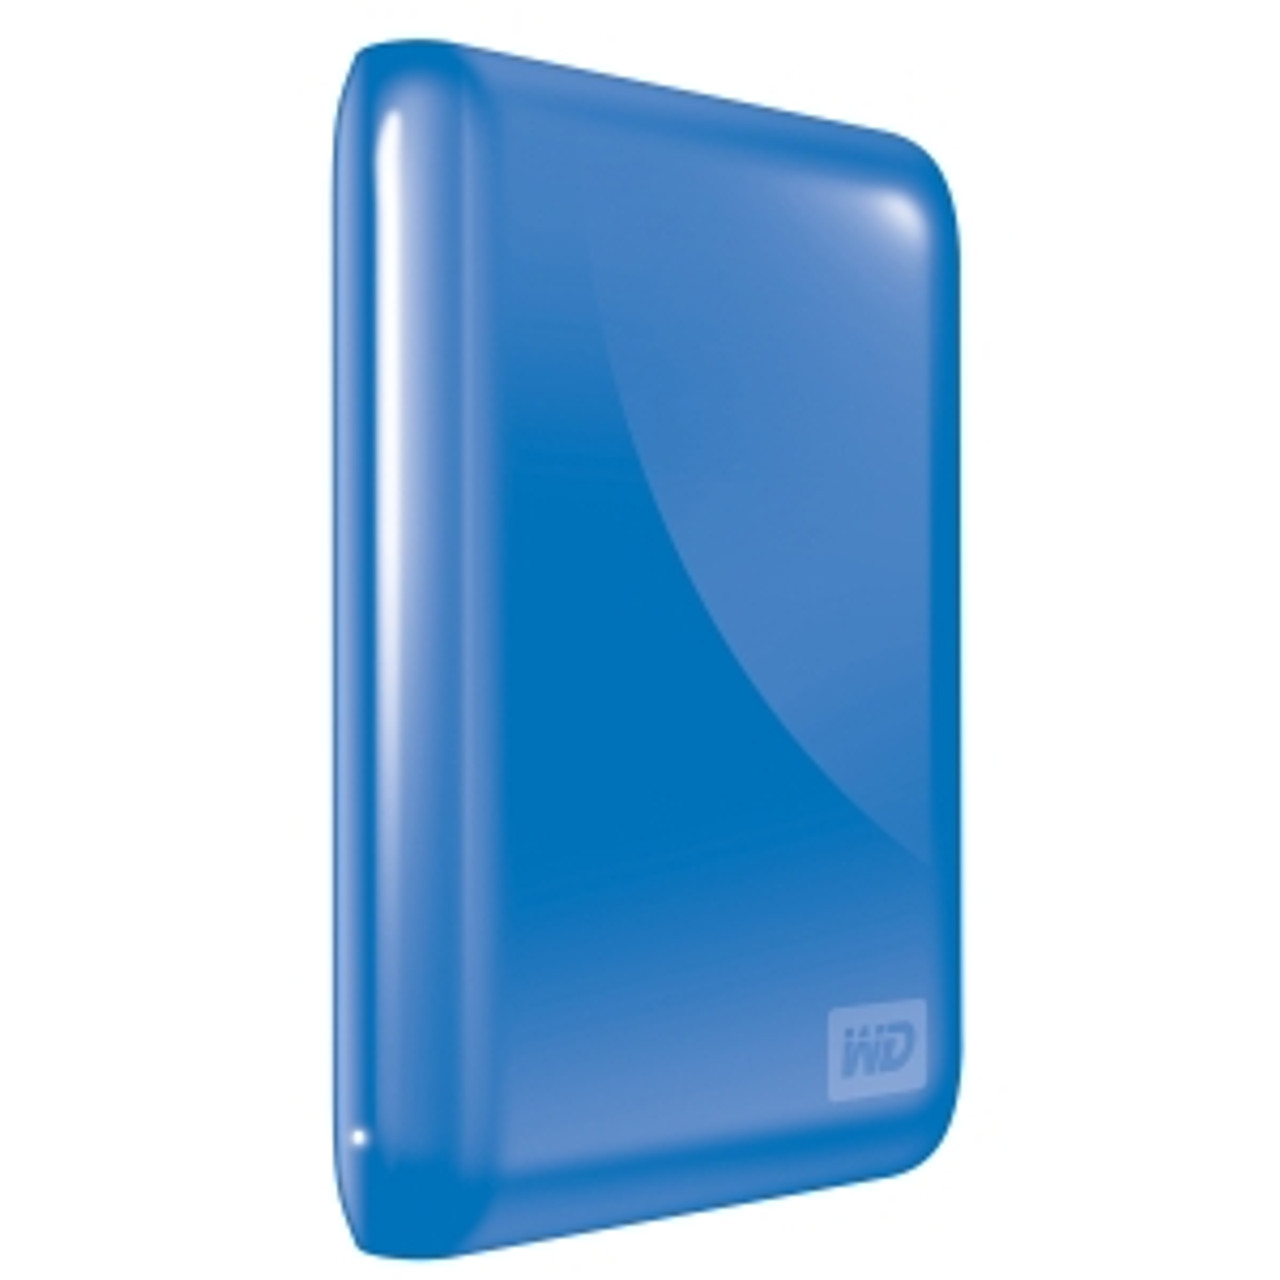 WDBAAA5000ABL-NESN - Western Digital My Passport Essential 500 GB External Hard Drive - Blue - USB 2.0